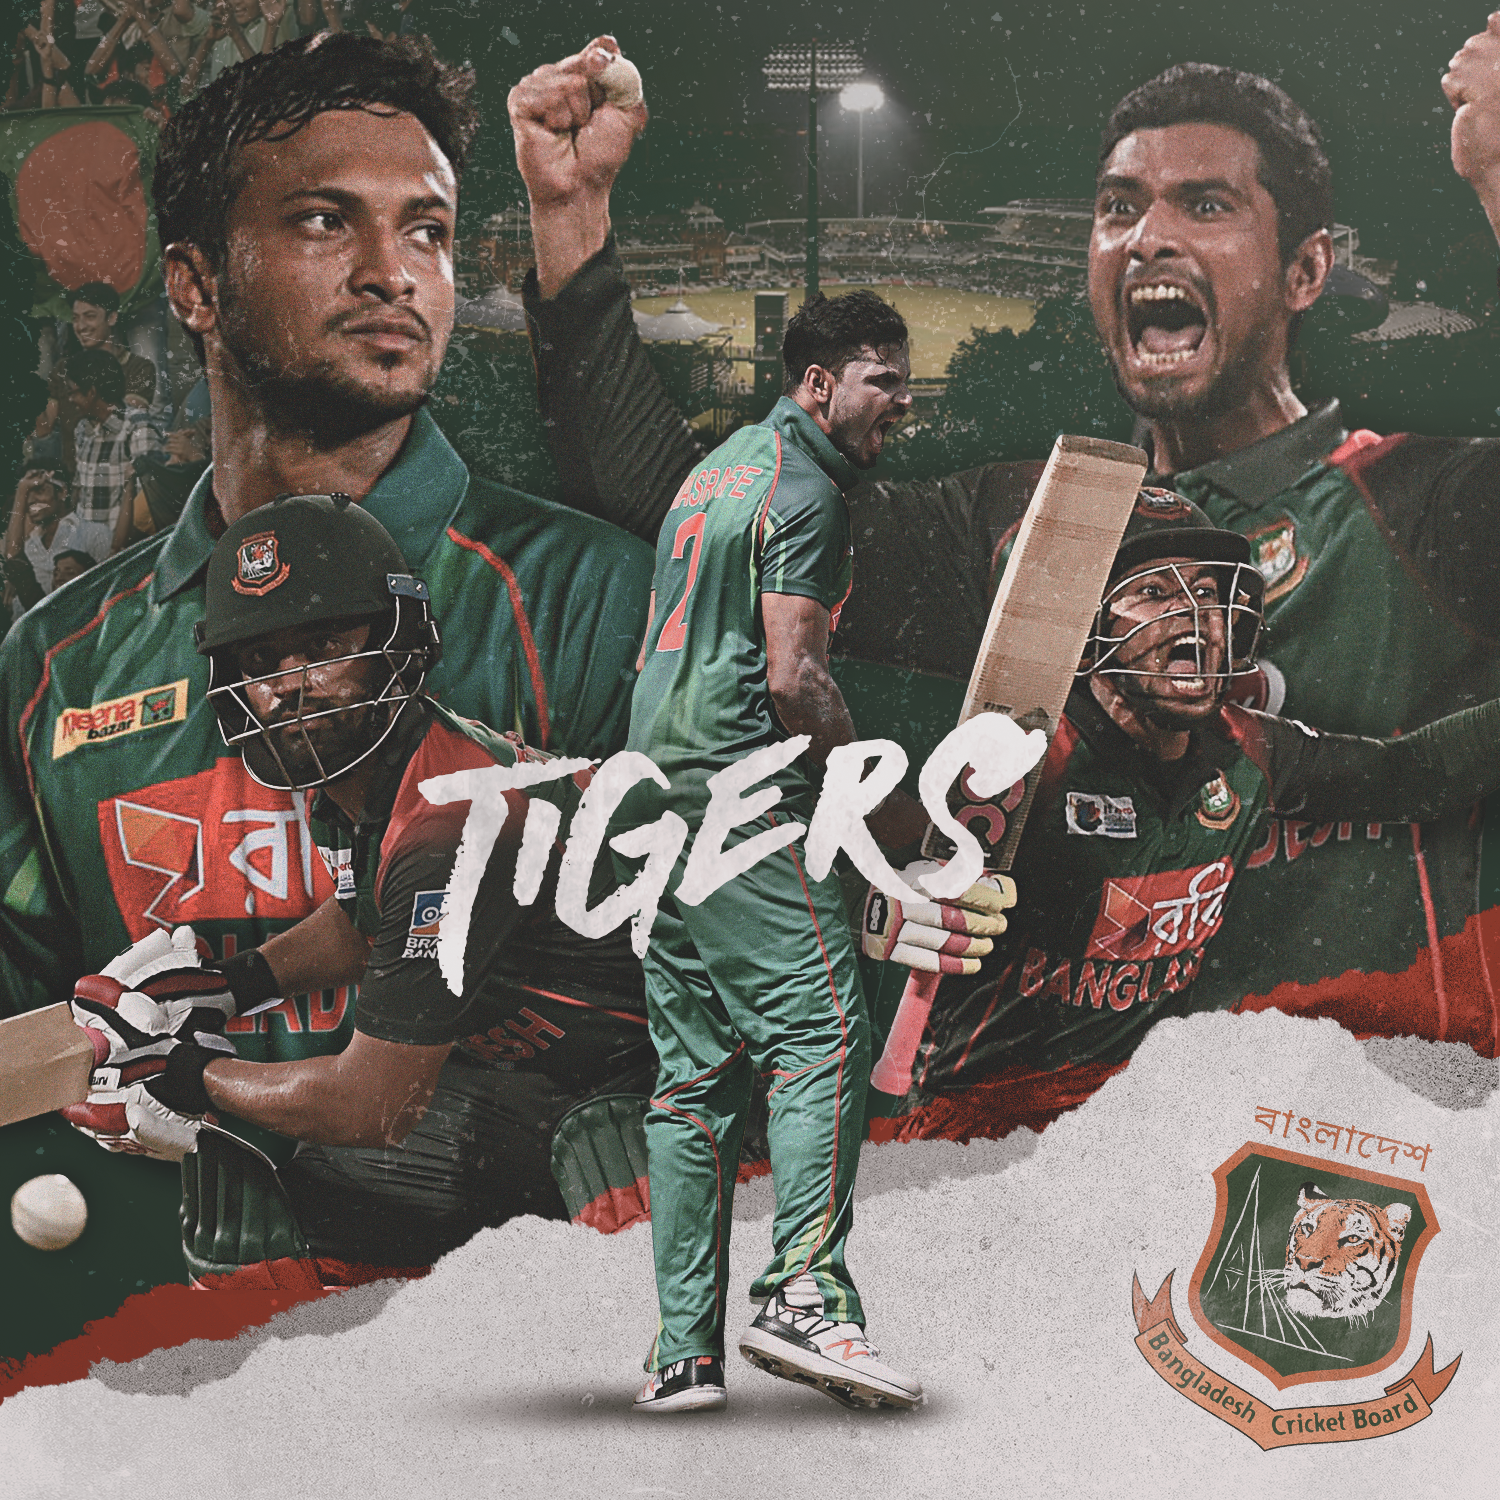 Bangladesh cricket team.com